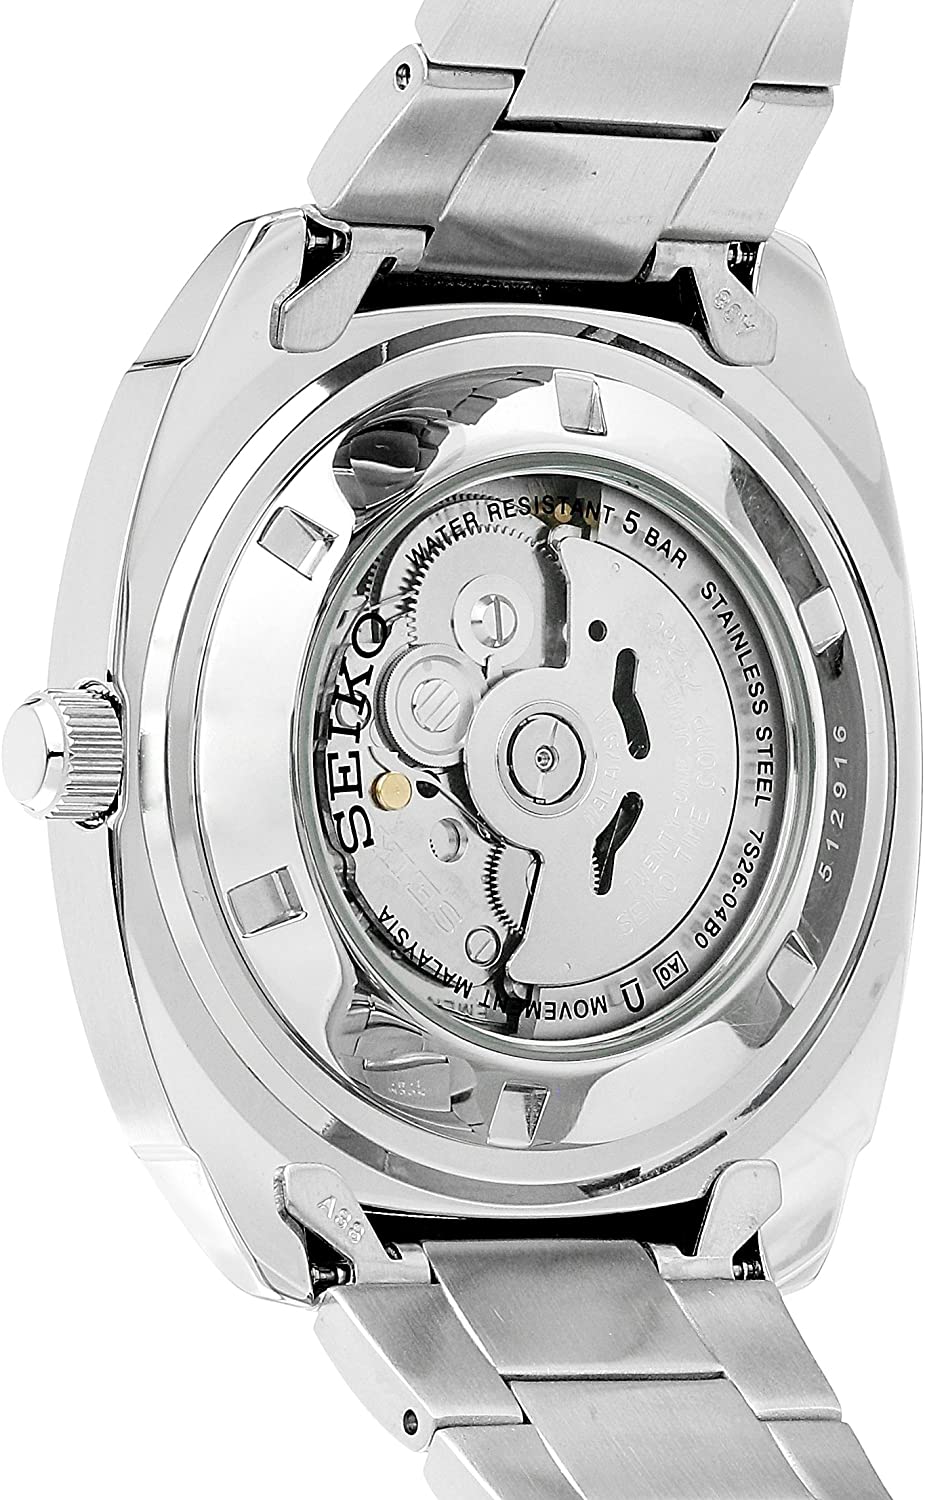 Đồng hồ Seiko cổ sẵn sàng (SEIKO SNKM97 Watch) Seiko SNKM97 Analog Green  Dial Automatic Silver Stainless Steel Watch [Hộp & Sách hướng dẫn của Nhà  sản xuất + Người bán bảo